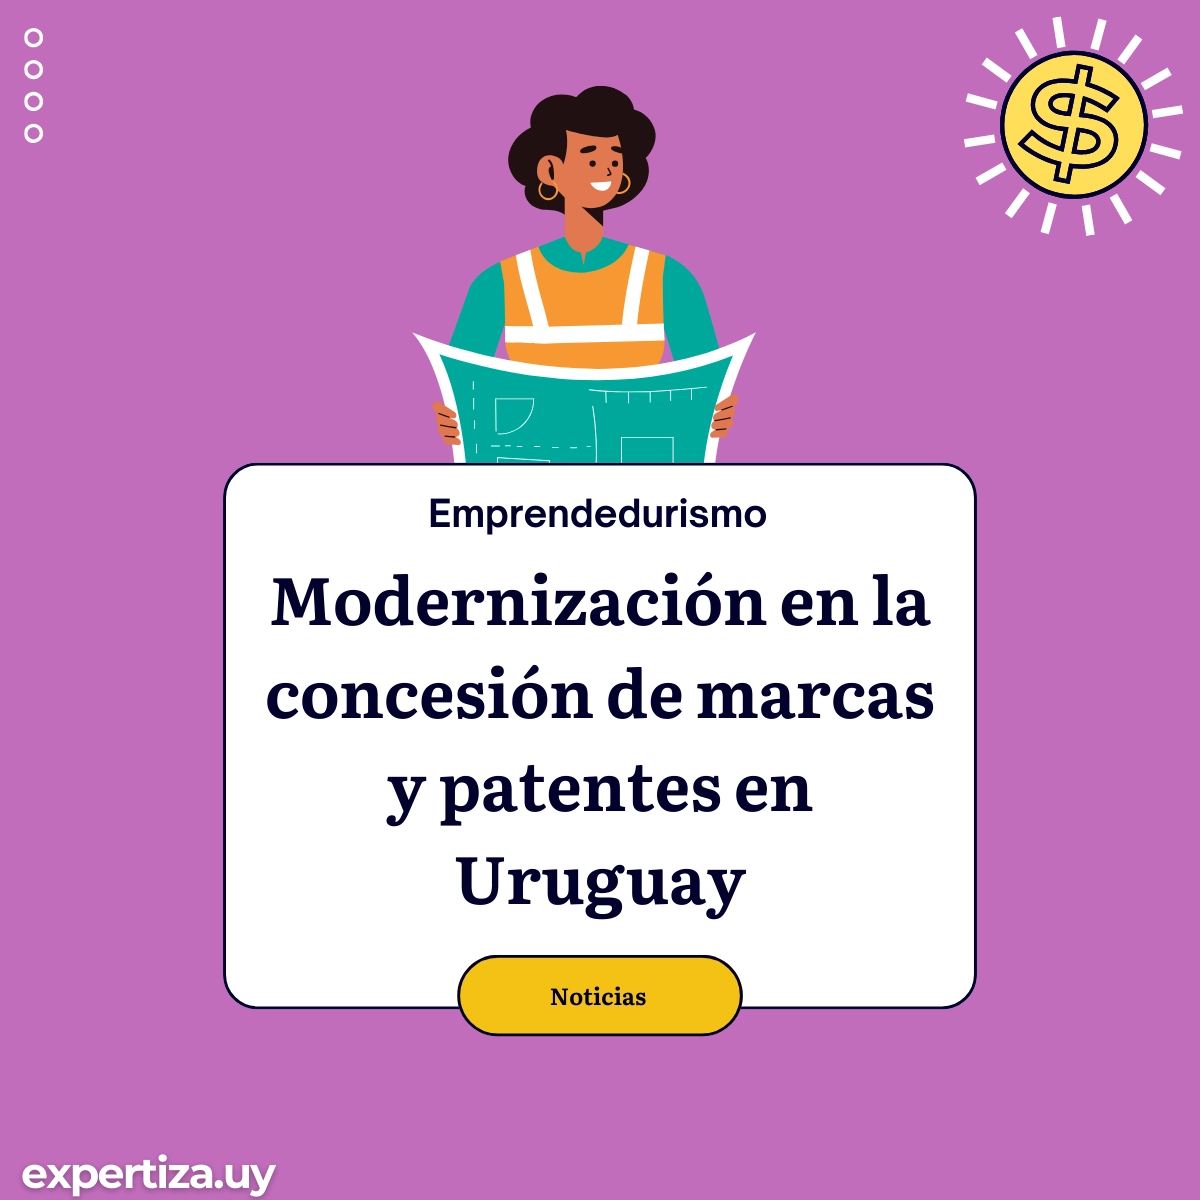 Modernización en la concesión de marcas y patentes en Uruguay.